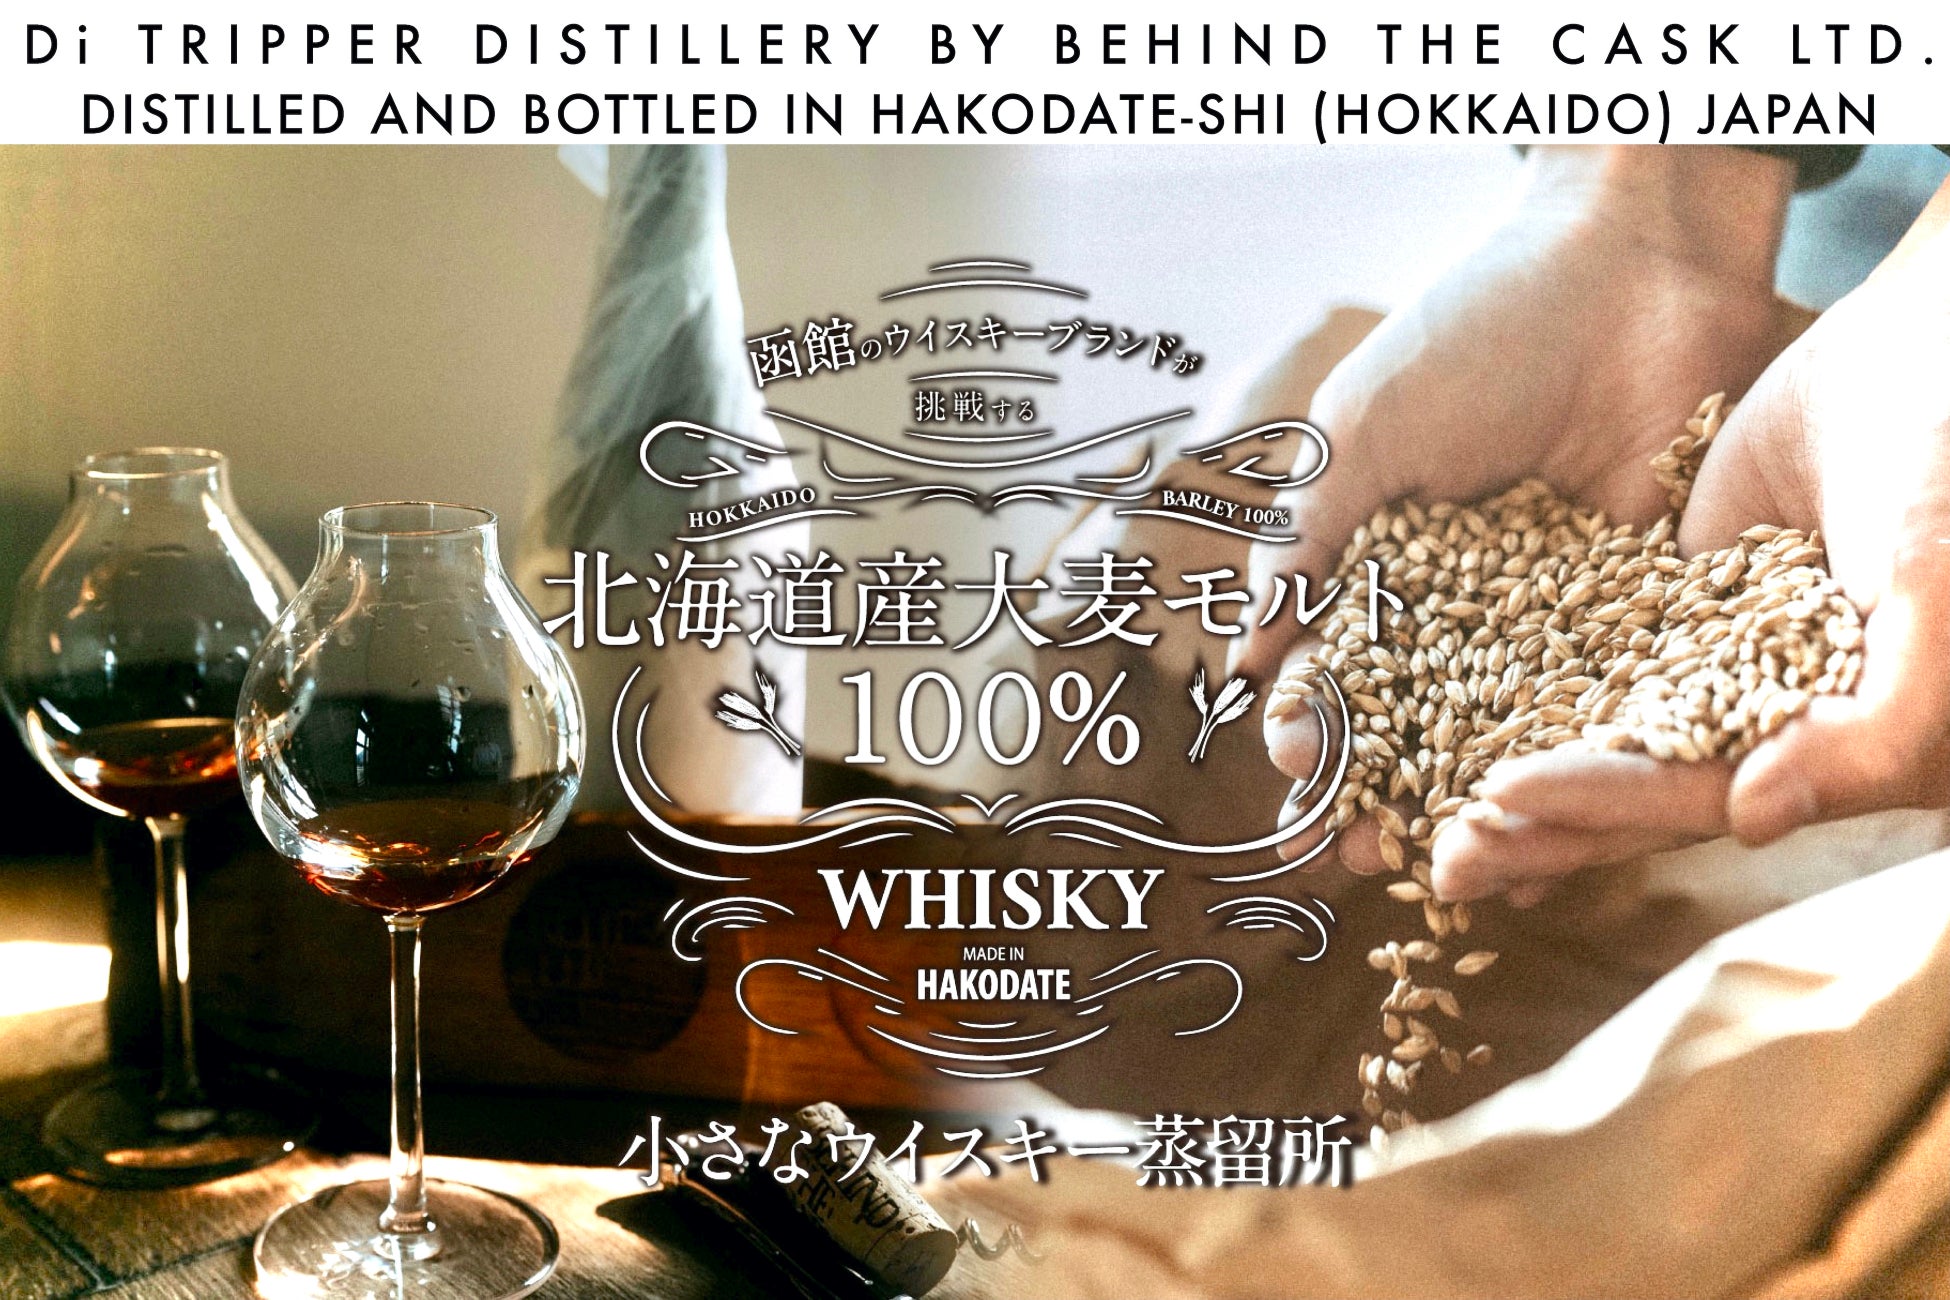 北海道函館初のウイスキー蒸留所『ディ・トリッパー』誕生、ウイスキーボトラー会社『ビハインド ザ カスク』がワイン醸造所移転跡地を引き継ぐ